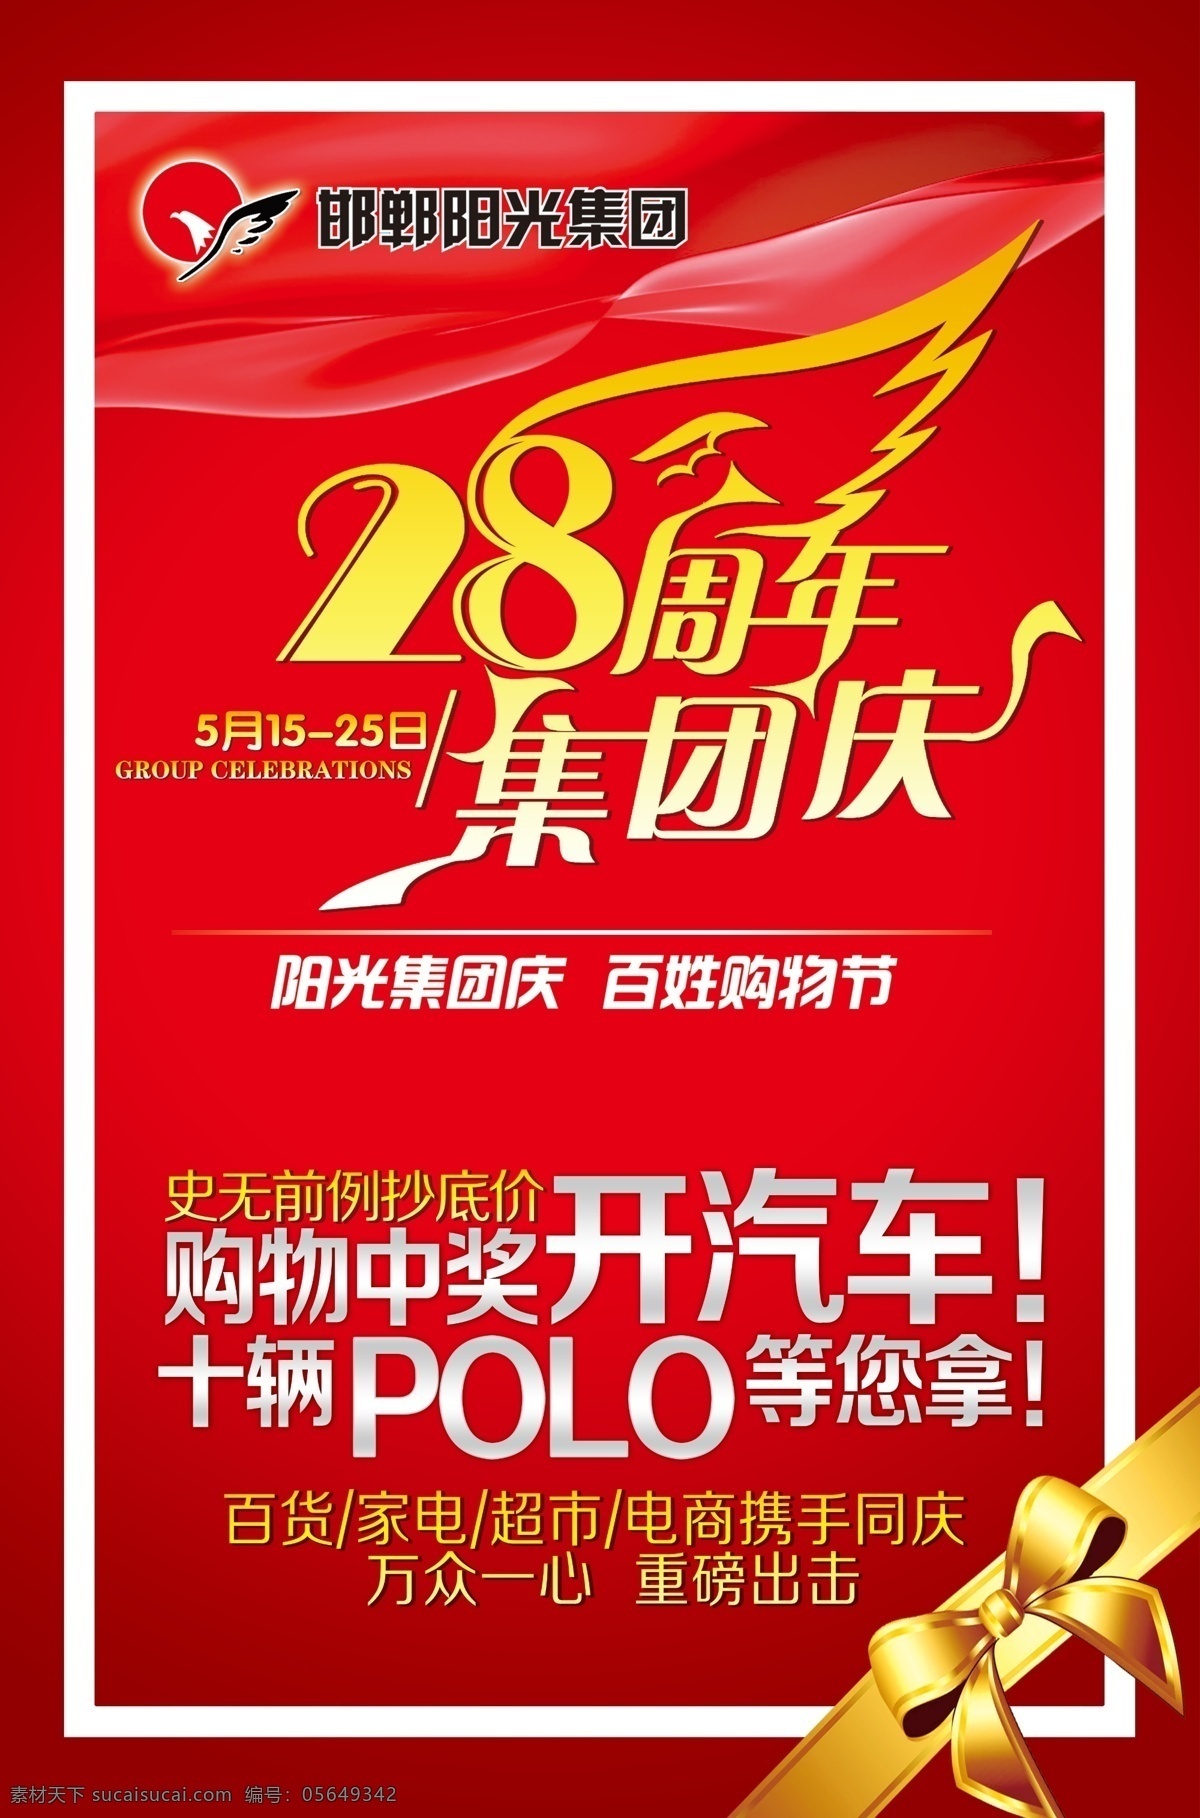 周年 集团 庆 28周年 集团庆 阳光集团标志 polo汽车 蝴蝶结 艺术字28 海报分层素材